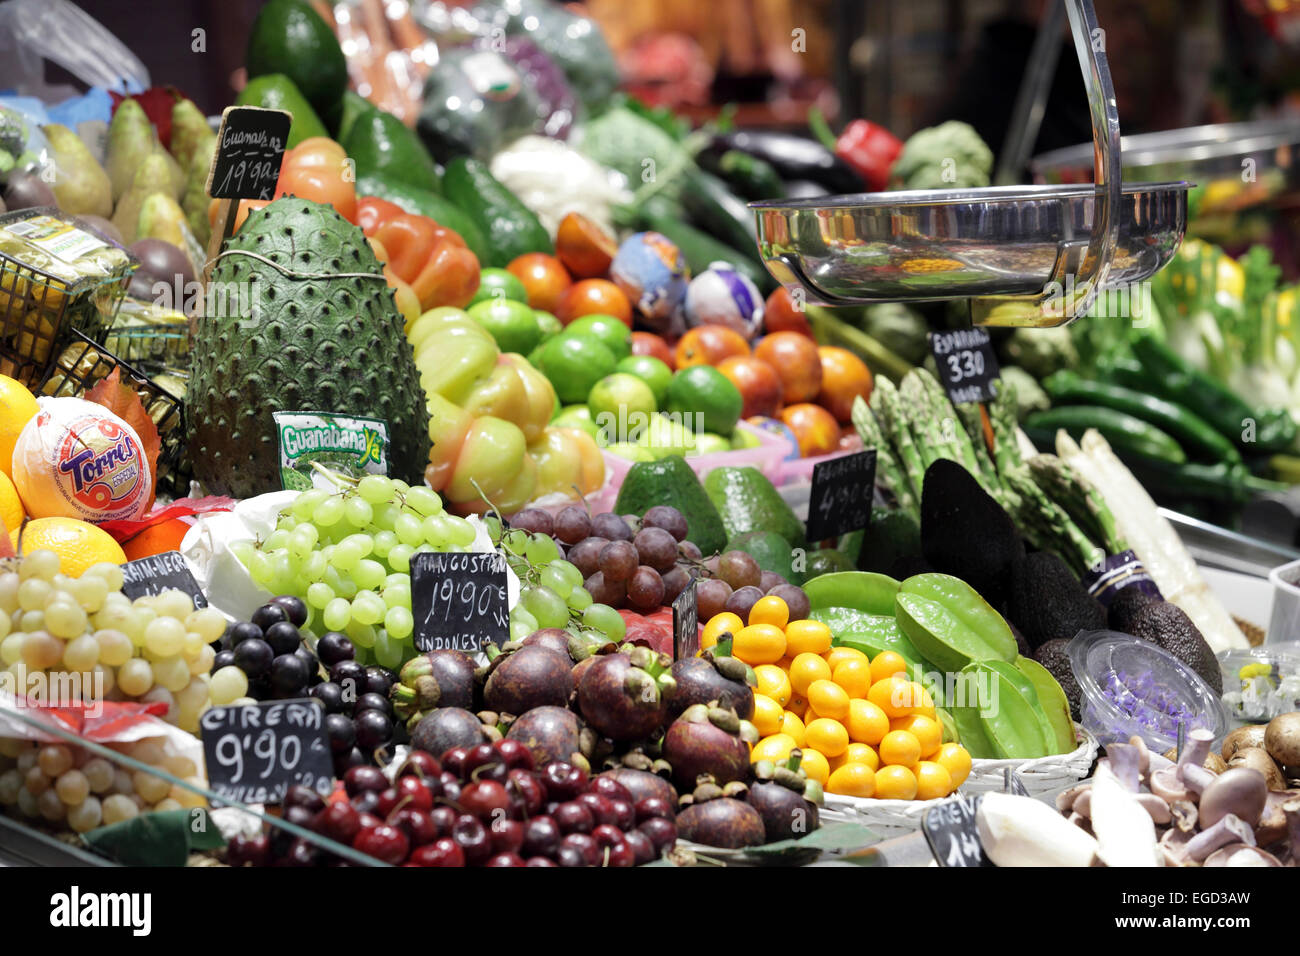 Exotic brightly colored fresh fruit for sale, Boqueria Market, La Rambla, Barcelona, Spain Stock Photo